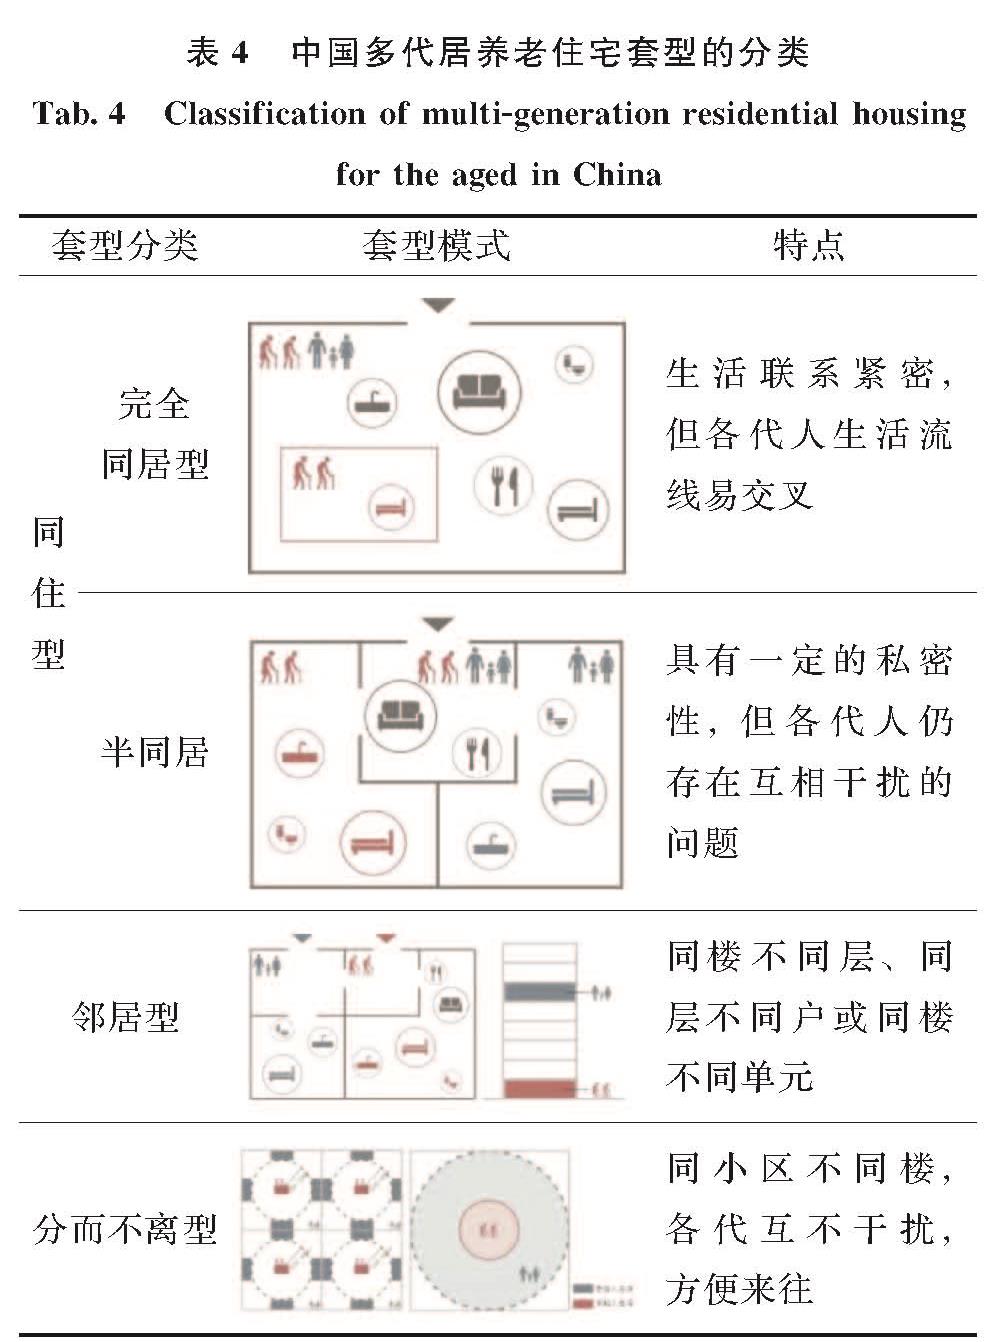 表4 中国多代居养老住宅套型的分类<br/>Tab.4 Classification of multi-generation residential housing for the aged in China